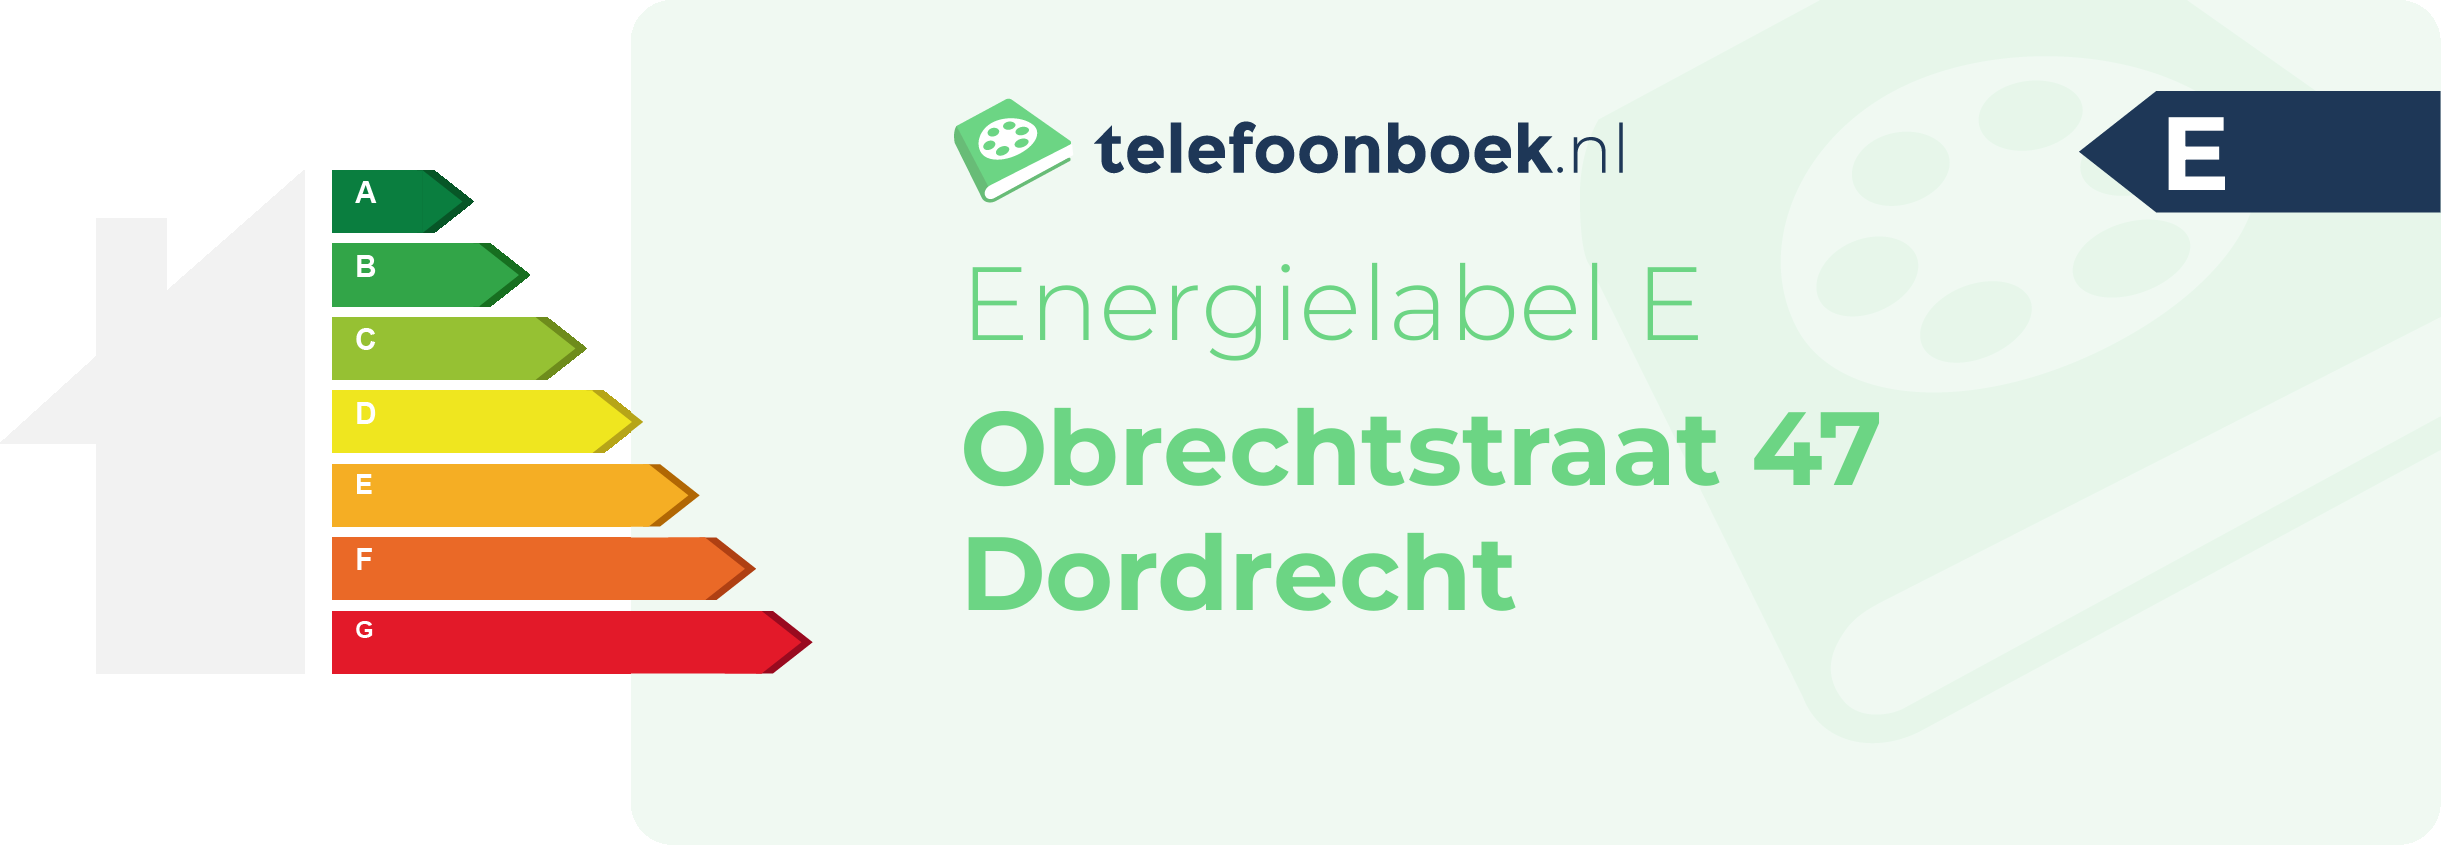 Energielabel Obrechtstraat 47 Dordrecht